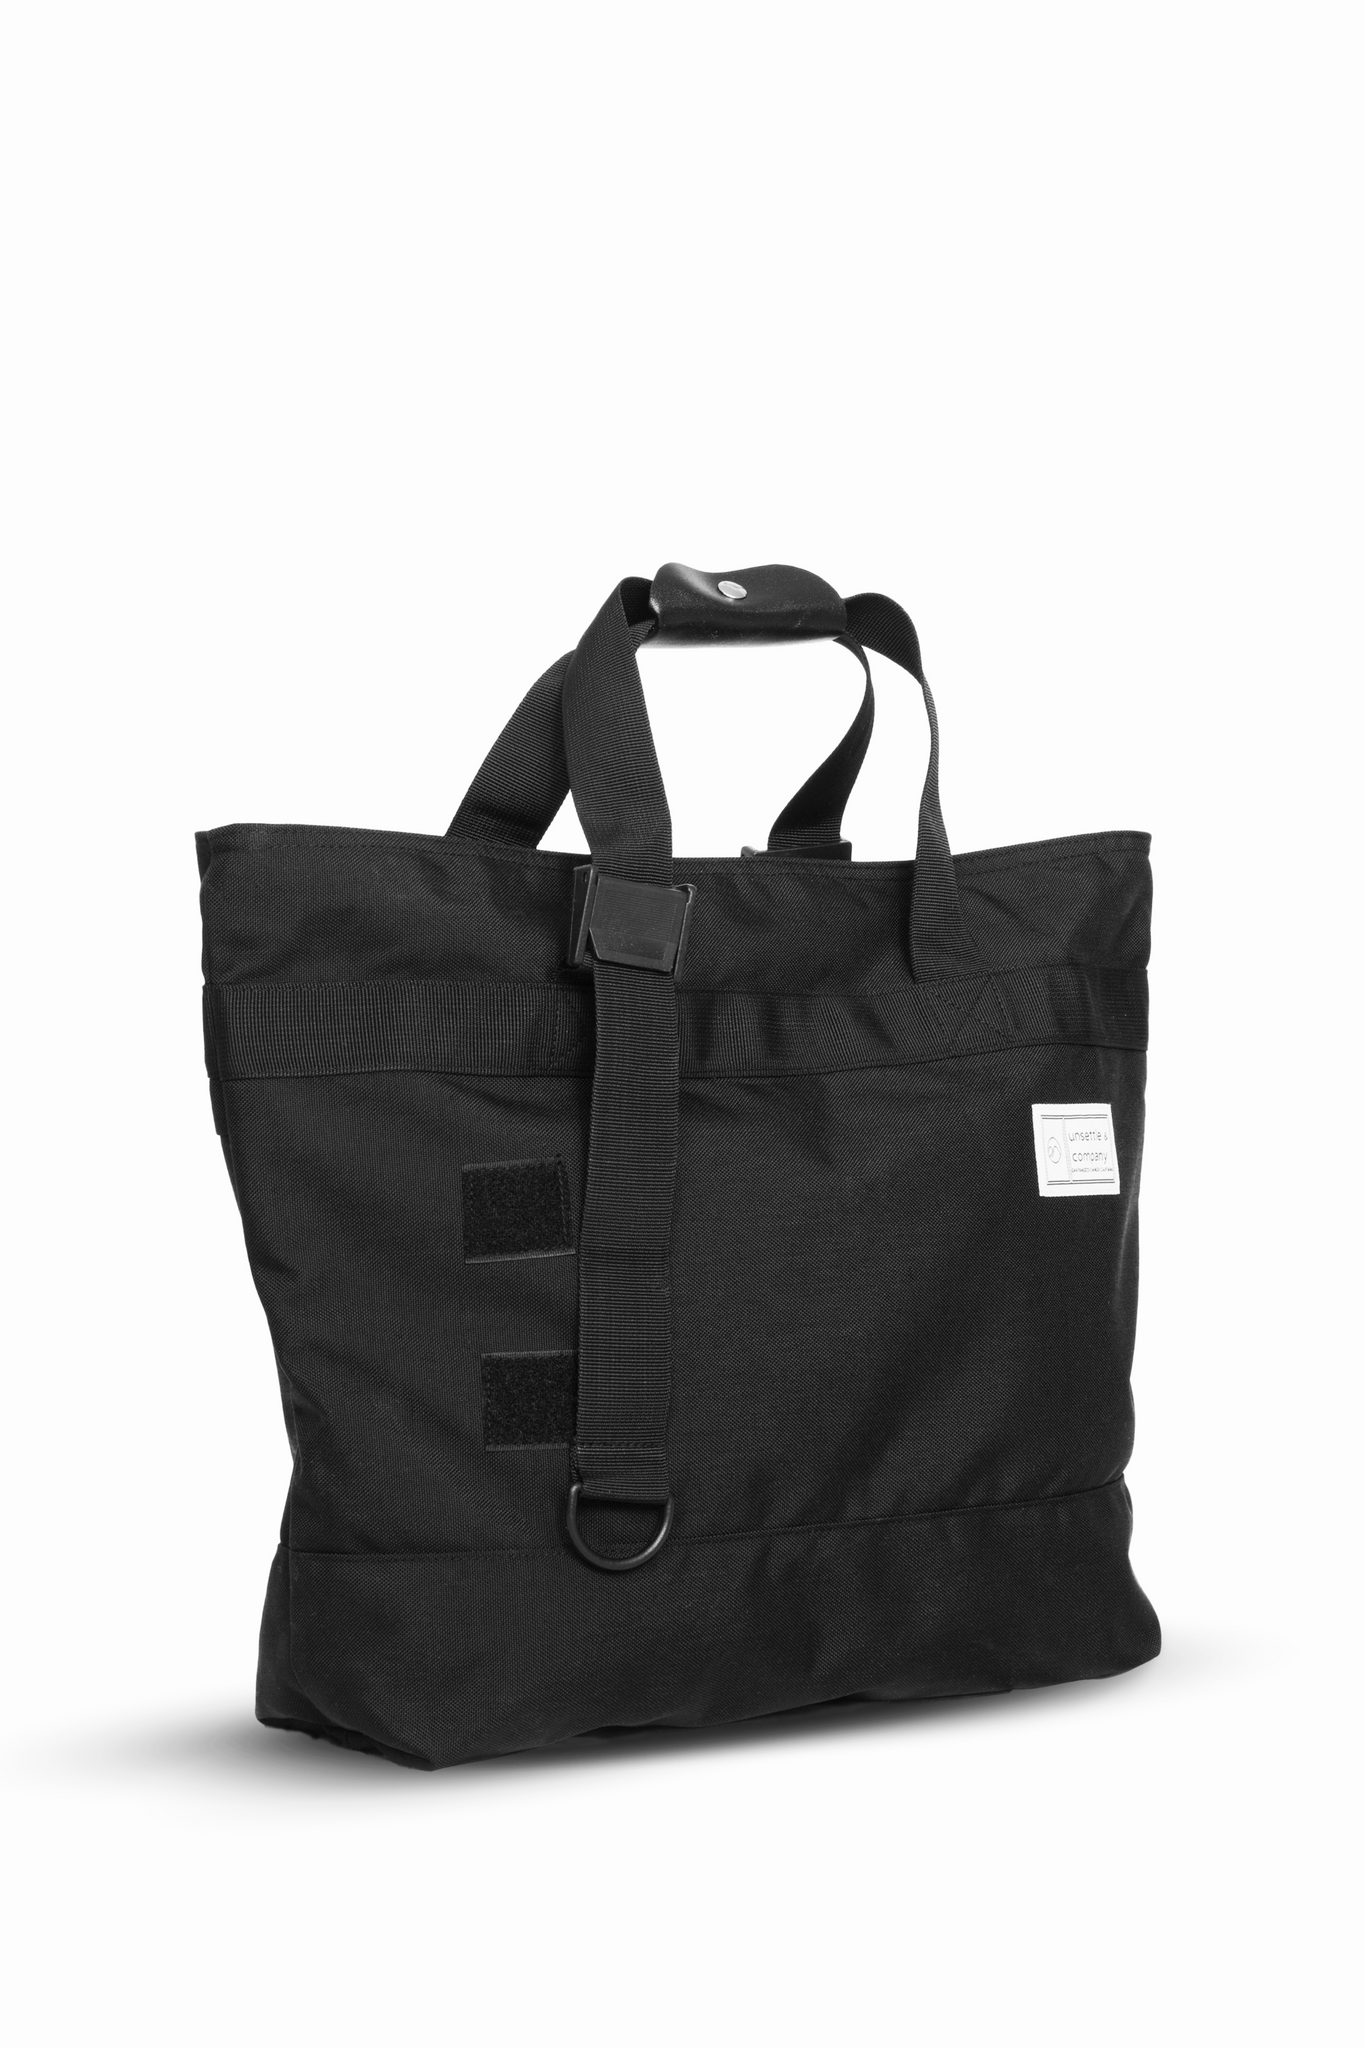 commuter-mens-adjustable-tote-bag-in-black